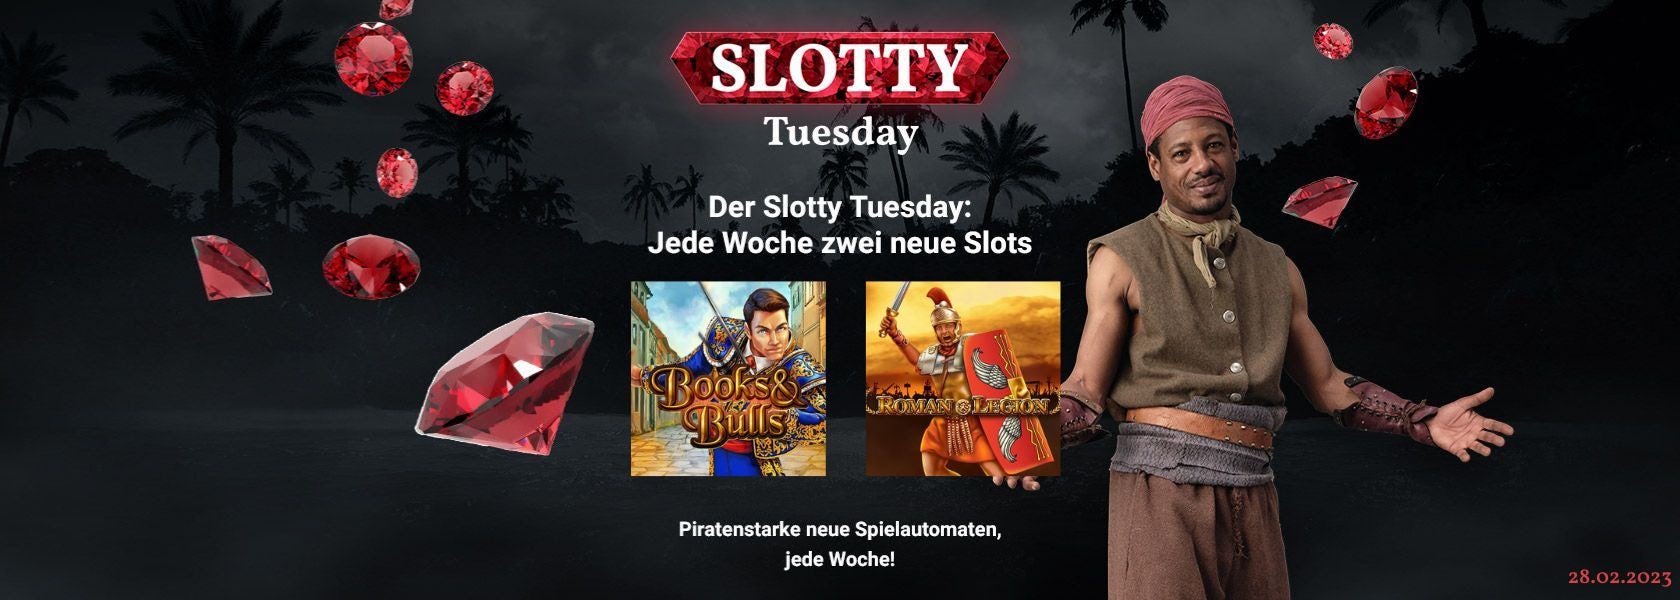 JPI-Header-Slotty-Tuesday-2802